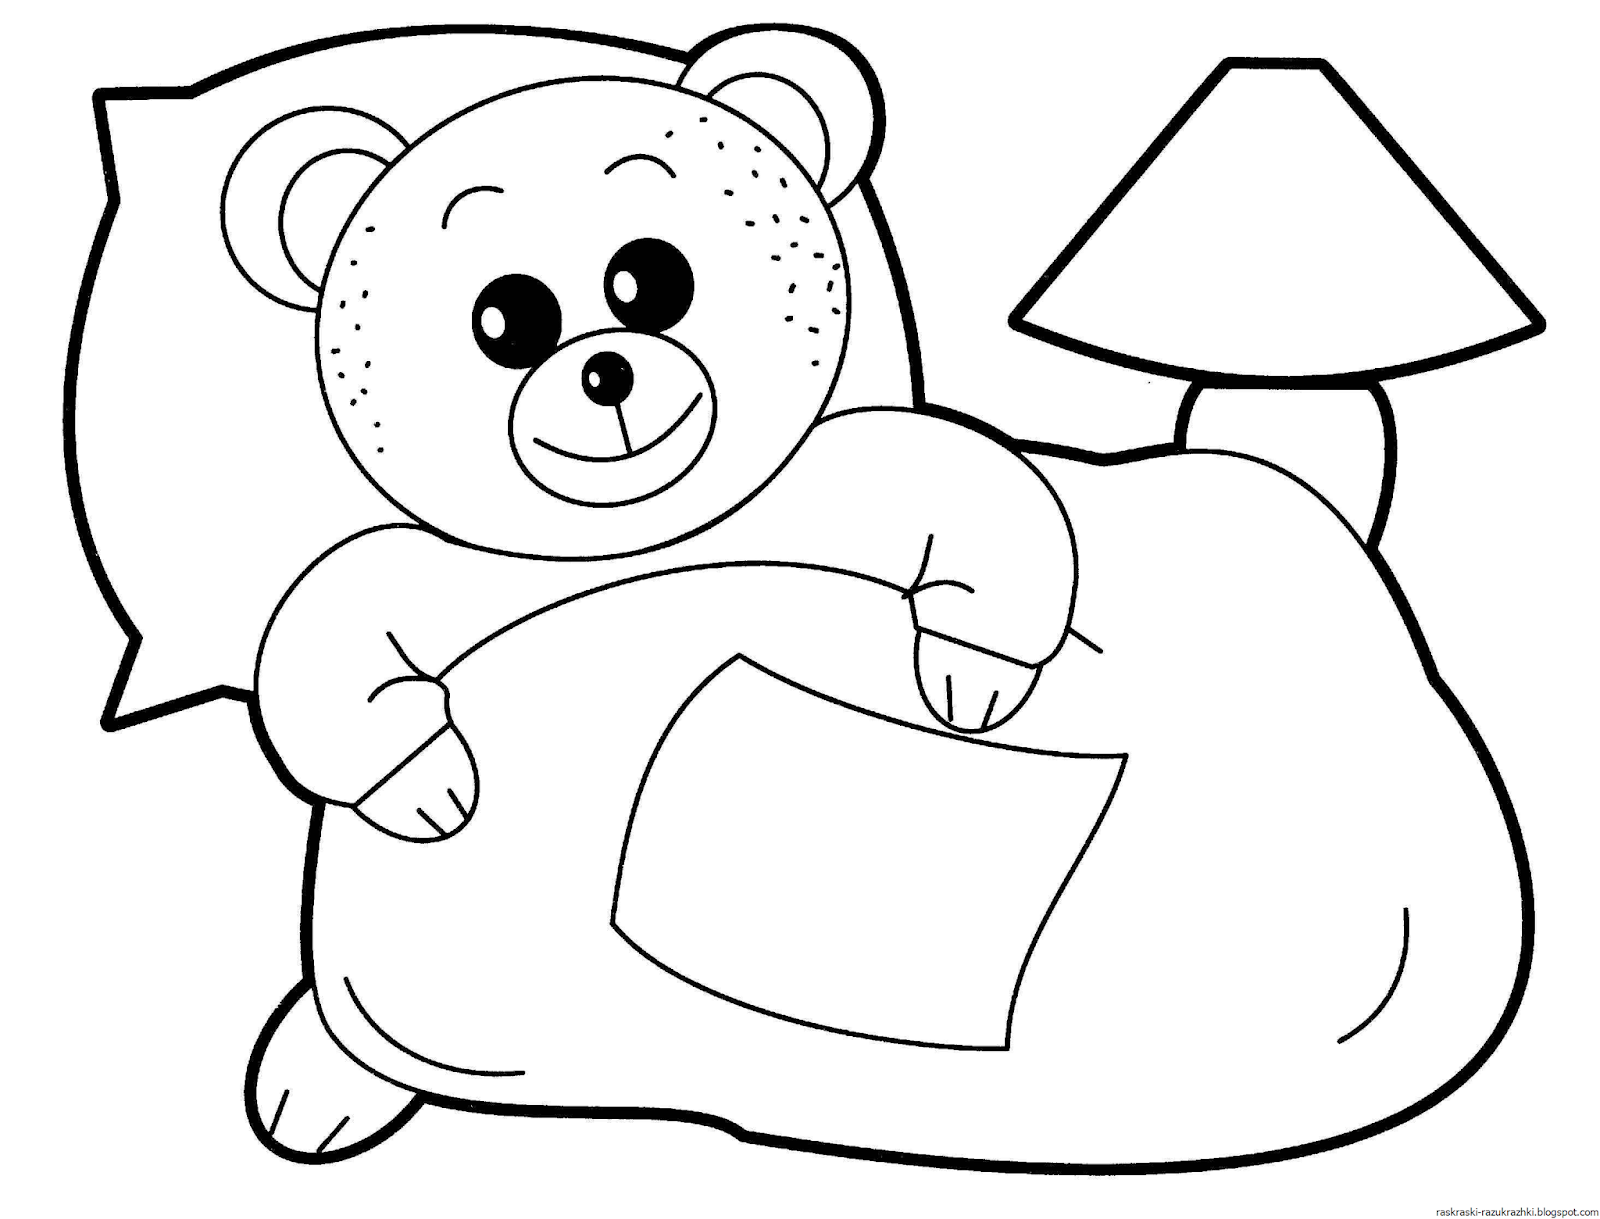 Картинки для раскрашивания для детей. Раскраска. Медвежонок. Раскраски для малышей. Мишка раскраска для детей. Раскраска "мишки".